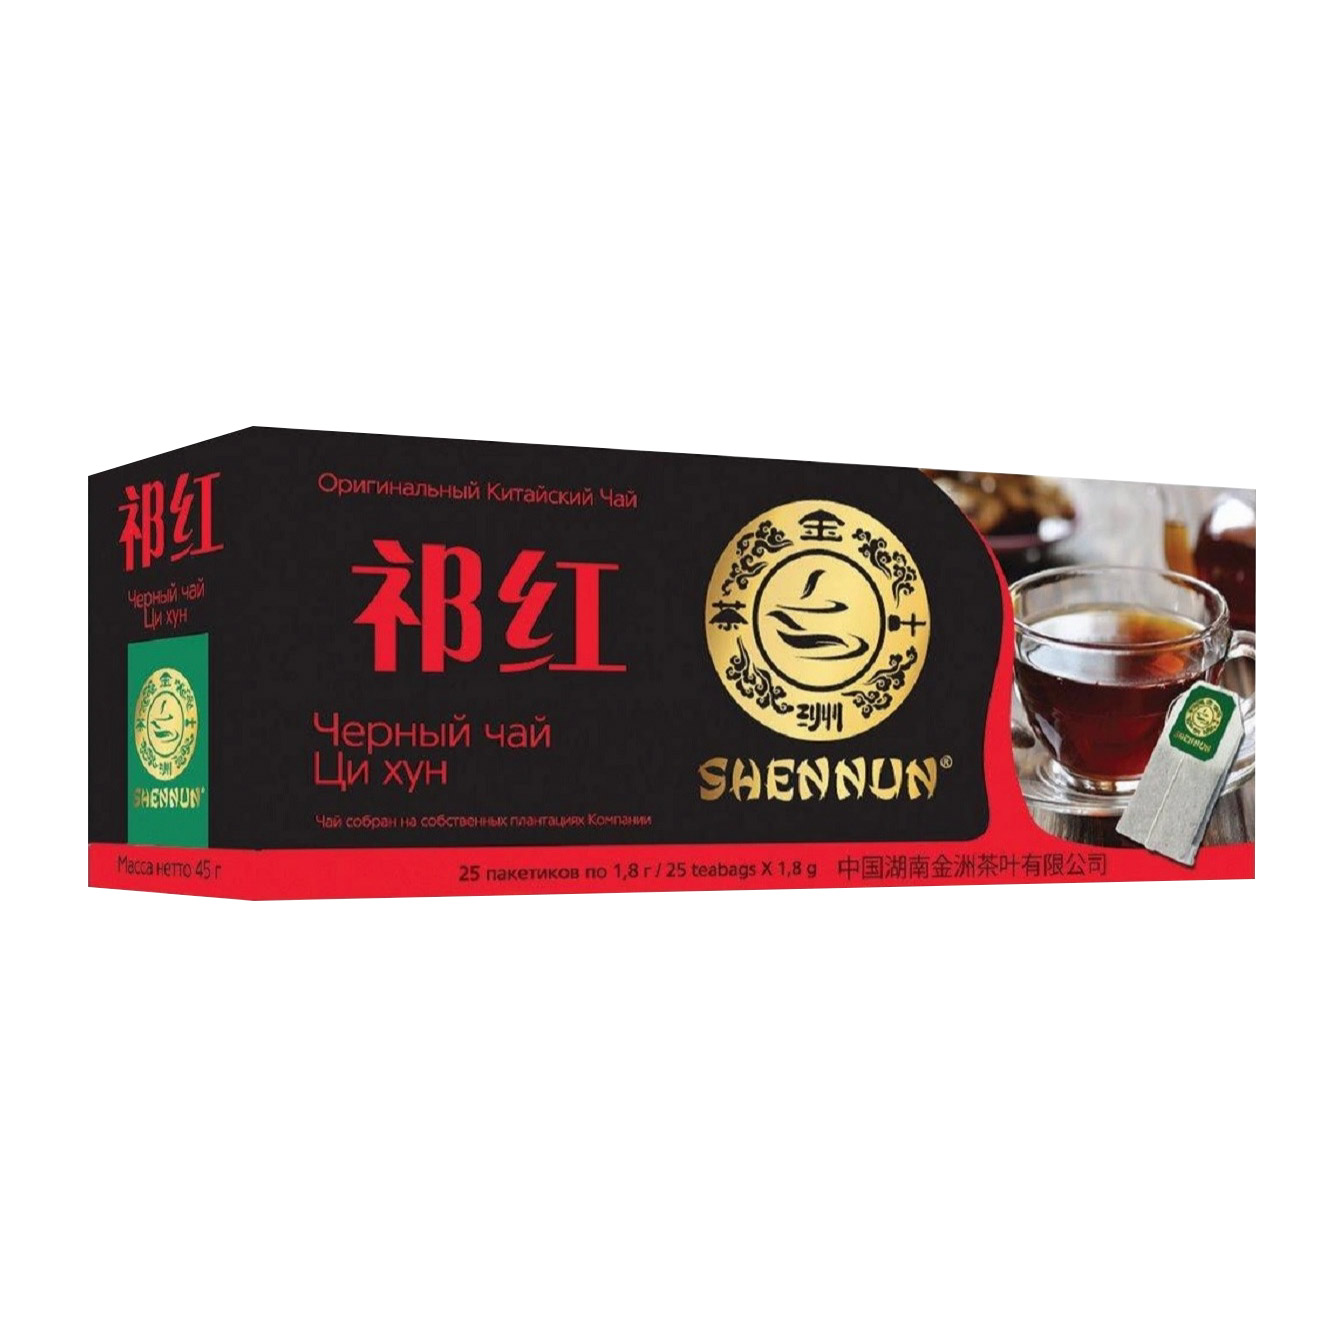 Чай черный Shennun Ци Хун, 25 пакетиков